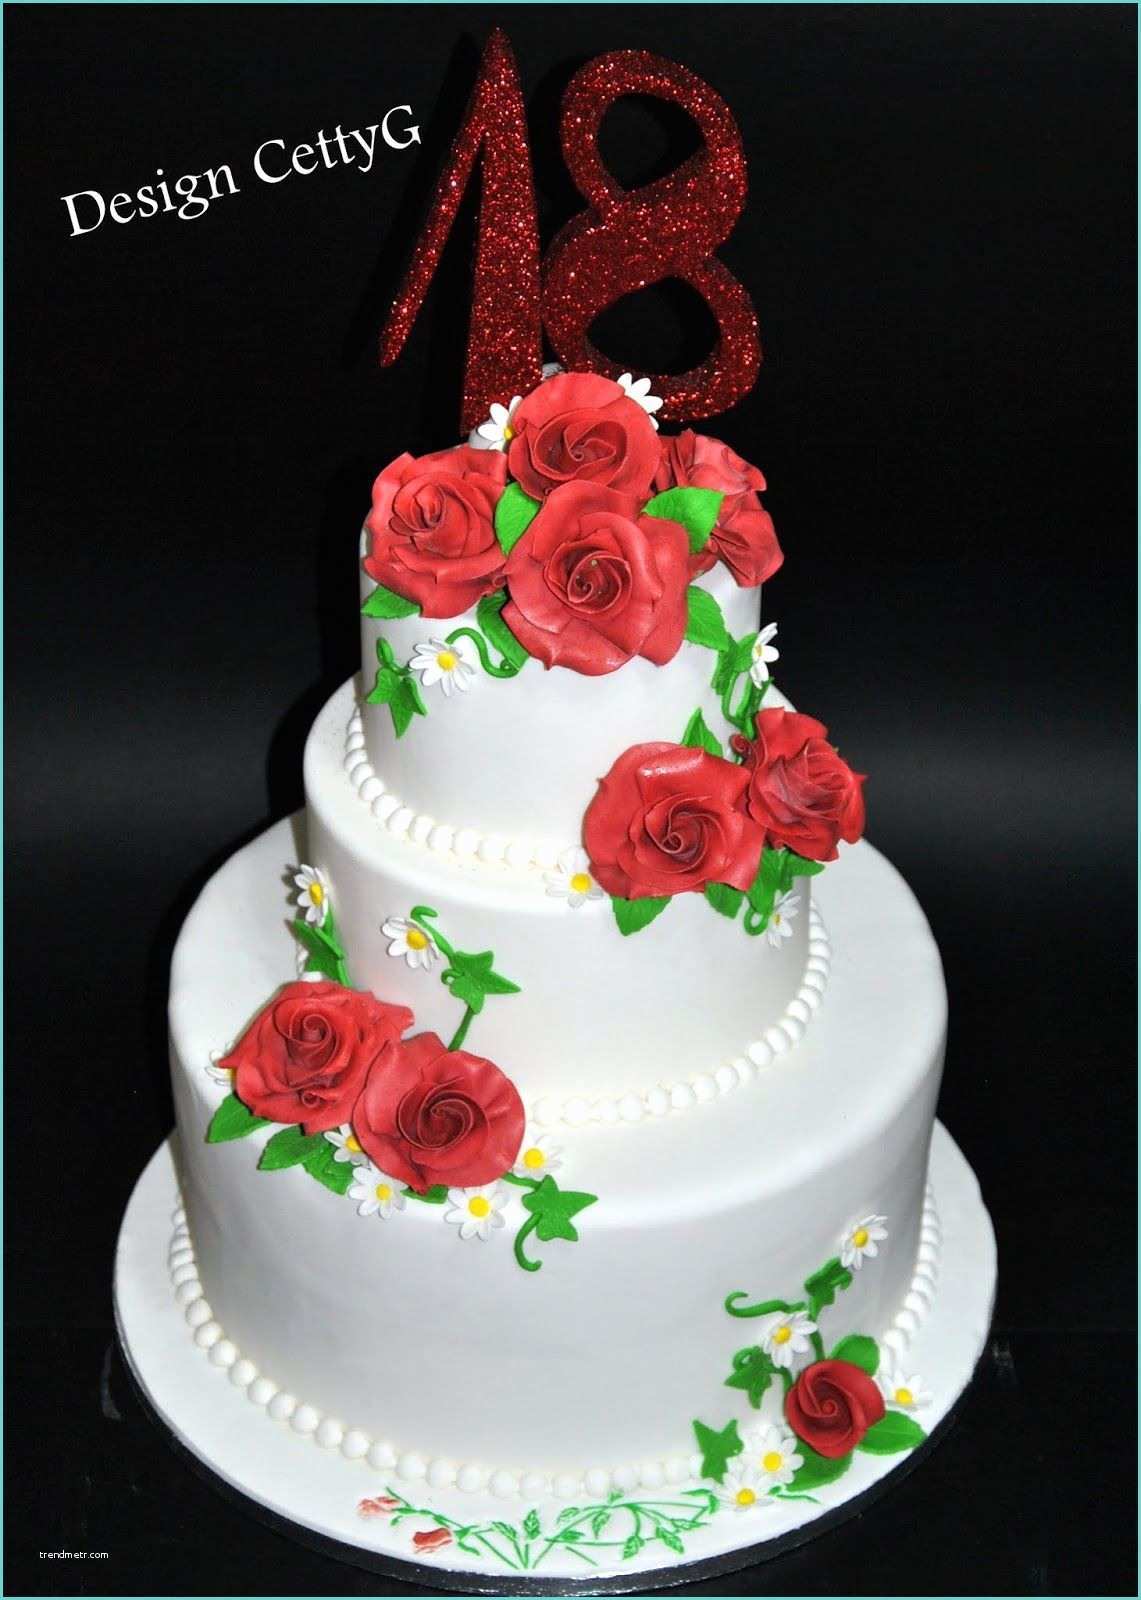 Torte Di Compleanno Cake Design Le torte Decorate Di Cettyg 18° Pleanno Cake